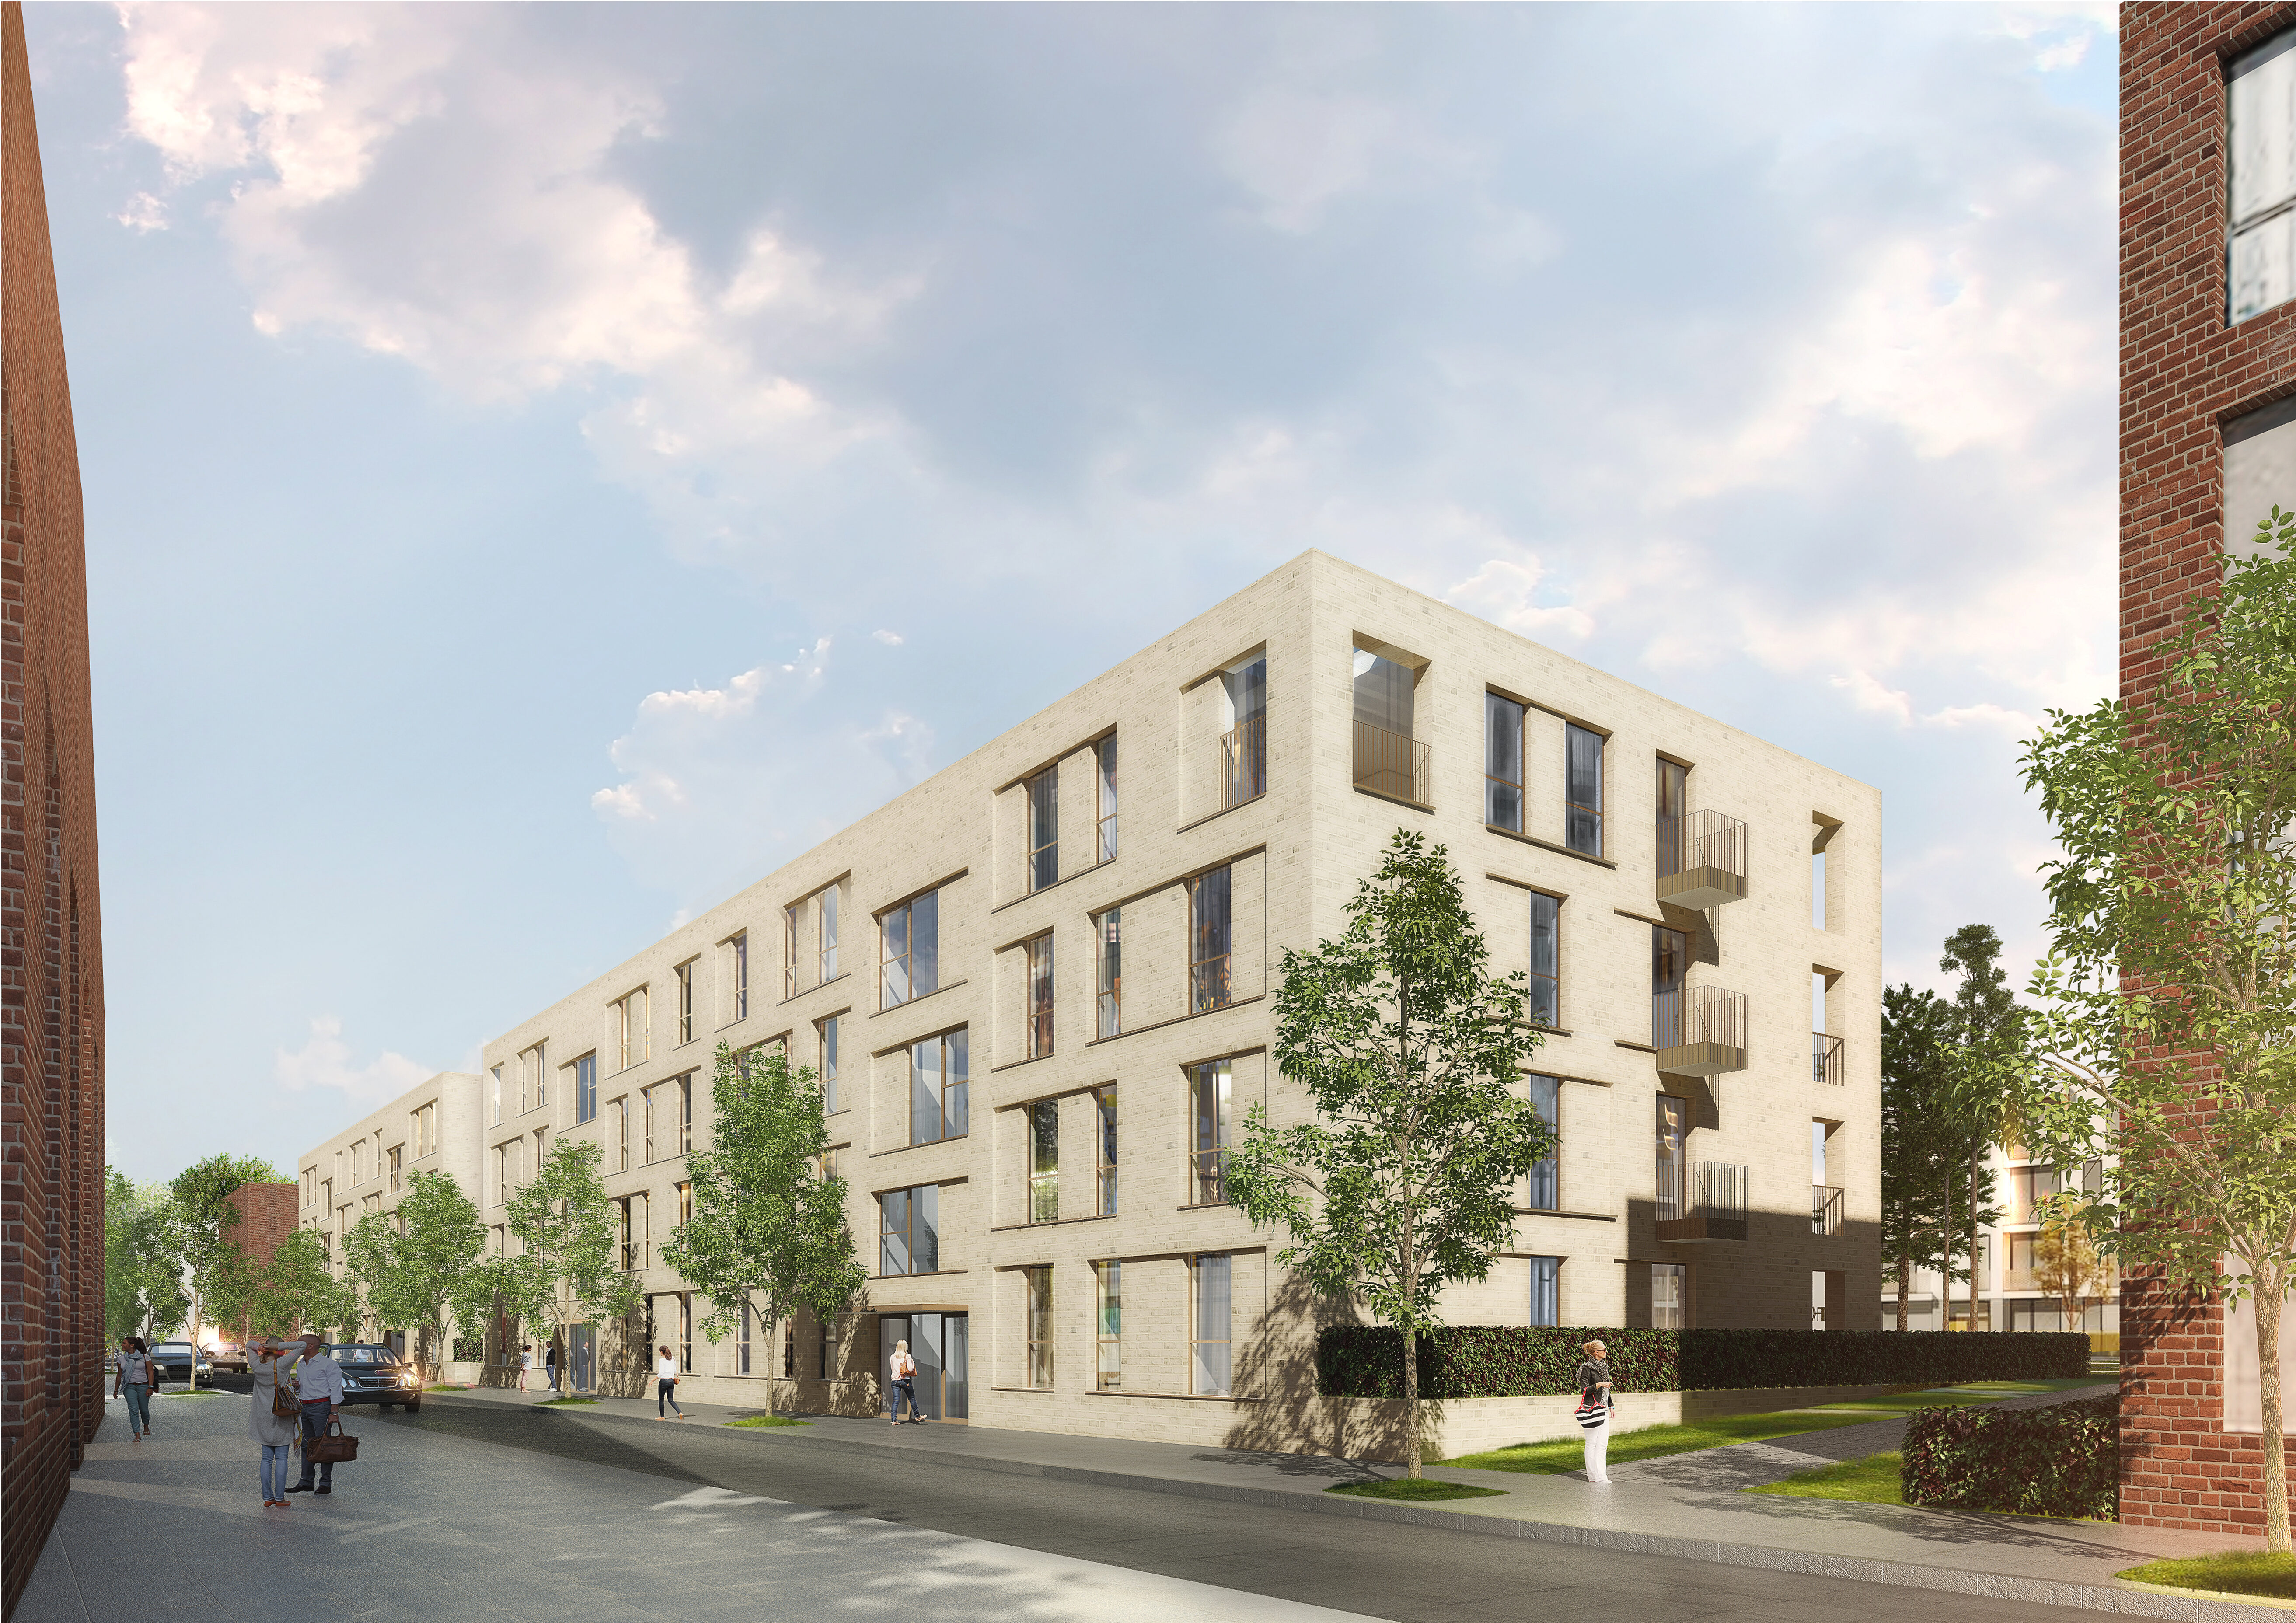 Clouth-Quartier Wohnungsbau WA13.2 Wüstenrot © GATERMANN + SCHOSSIG / Rendering Alexander Schmitz